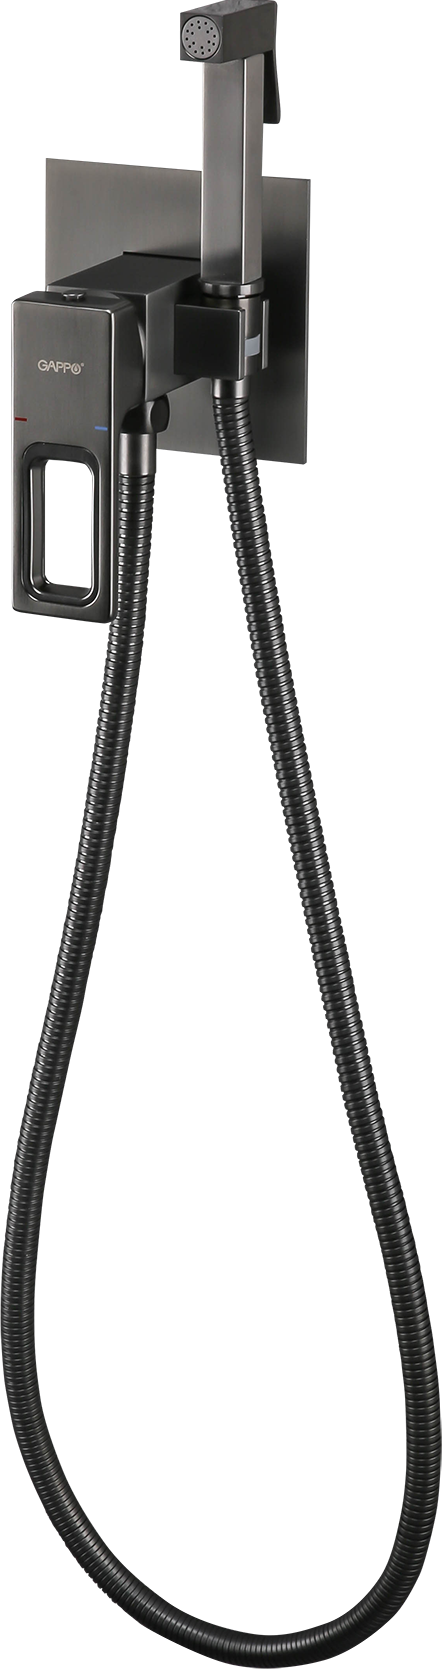 GAPPO G7217-9, Смеситель гигиенический душ встраиваемый, латунь, картридж 35 мм, оружейная сталь